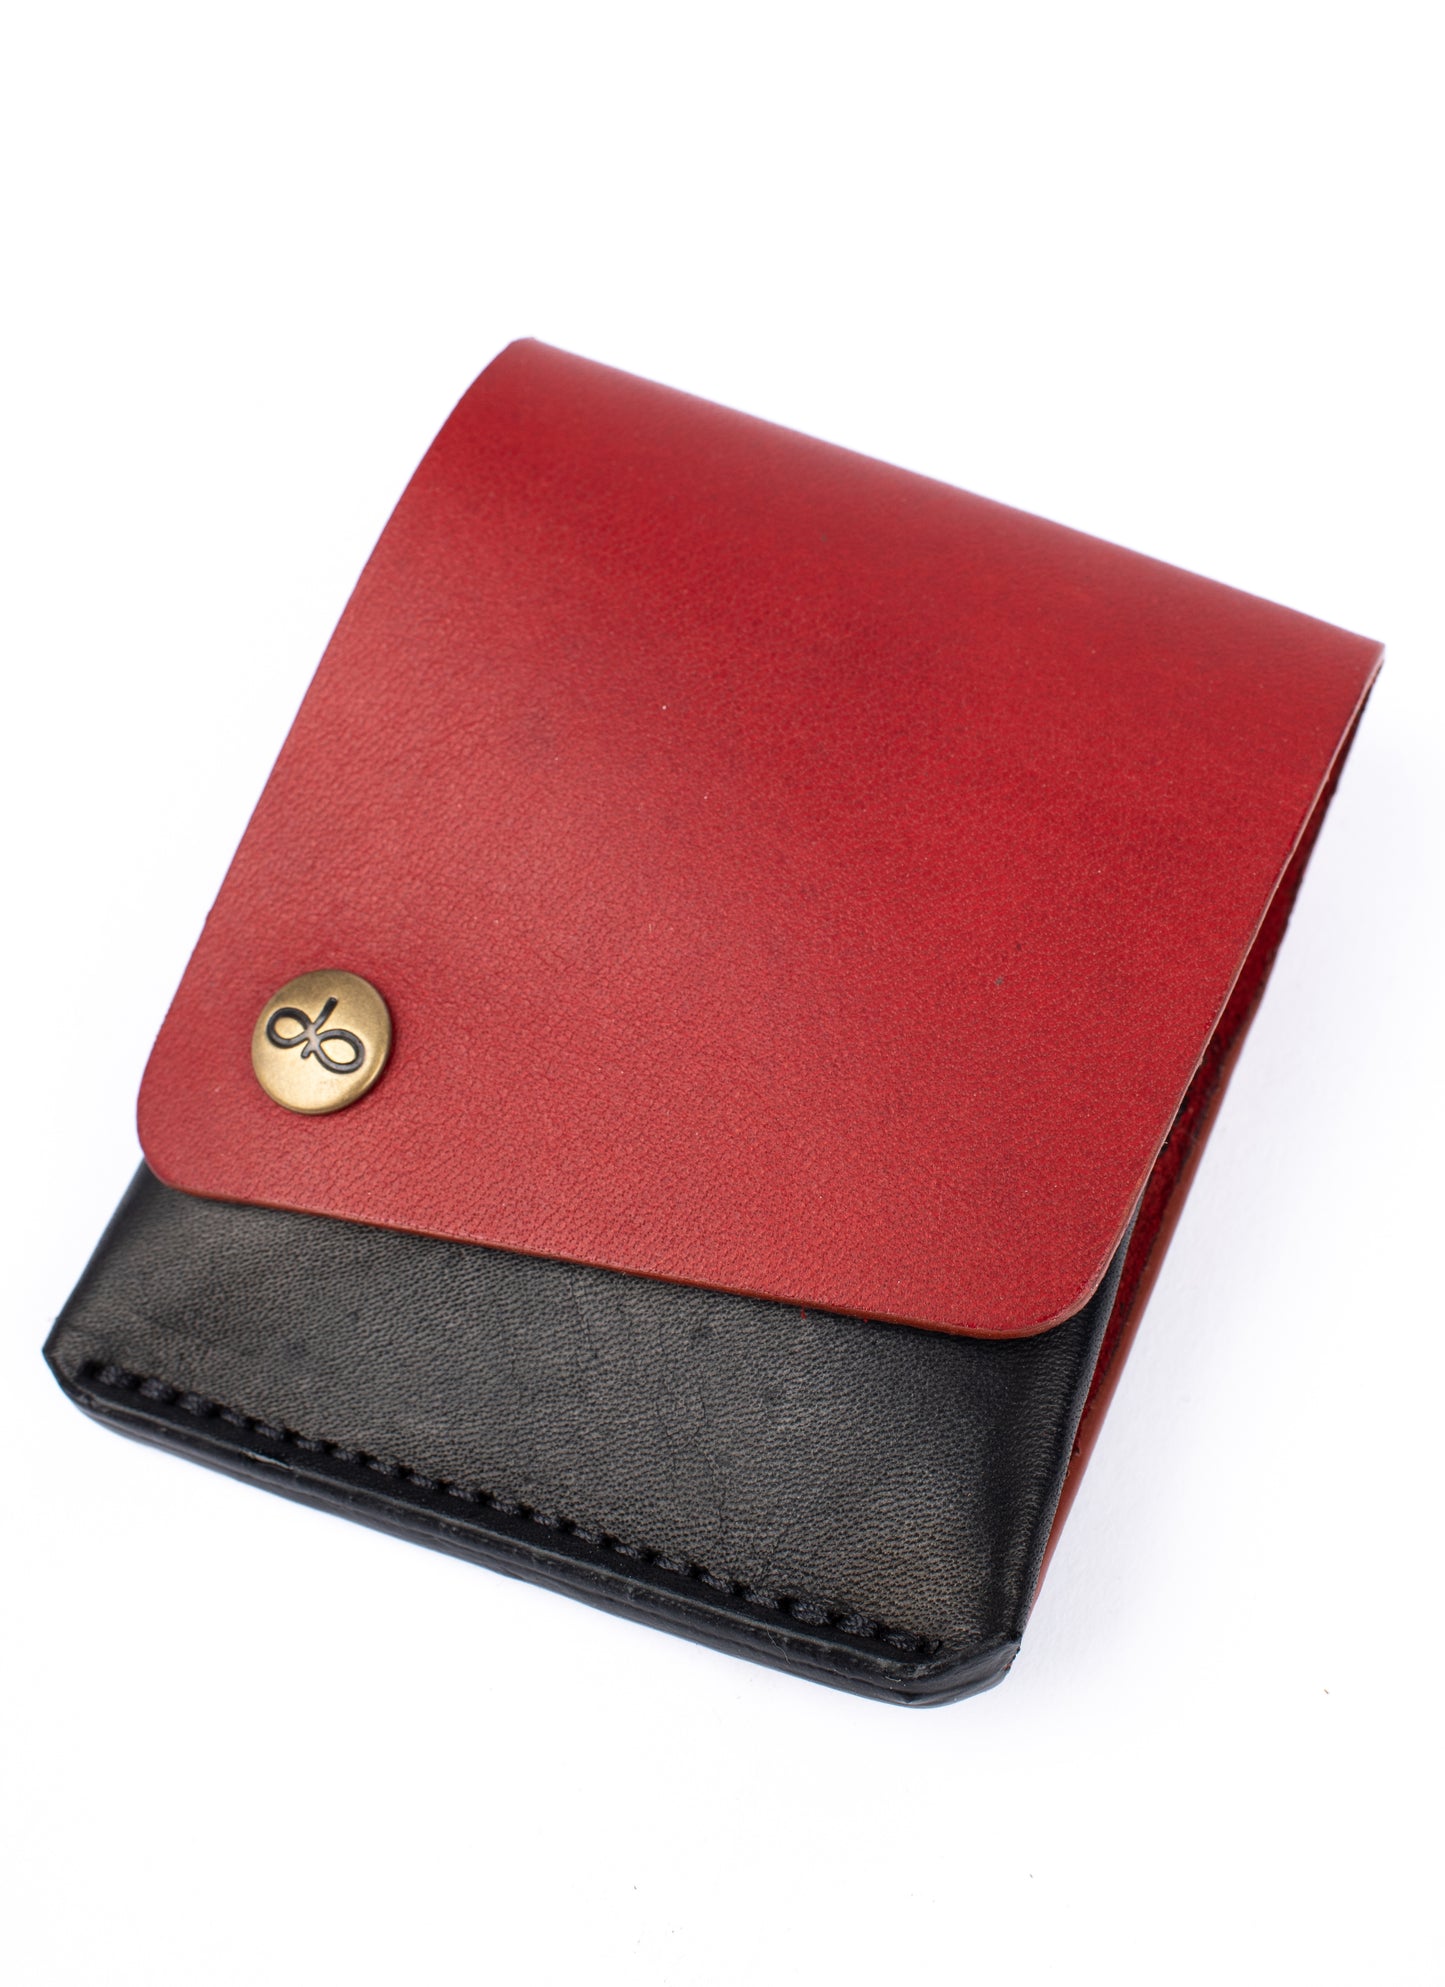 Piegato minimalist wallet red & black